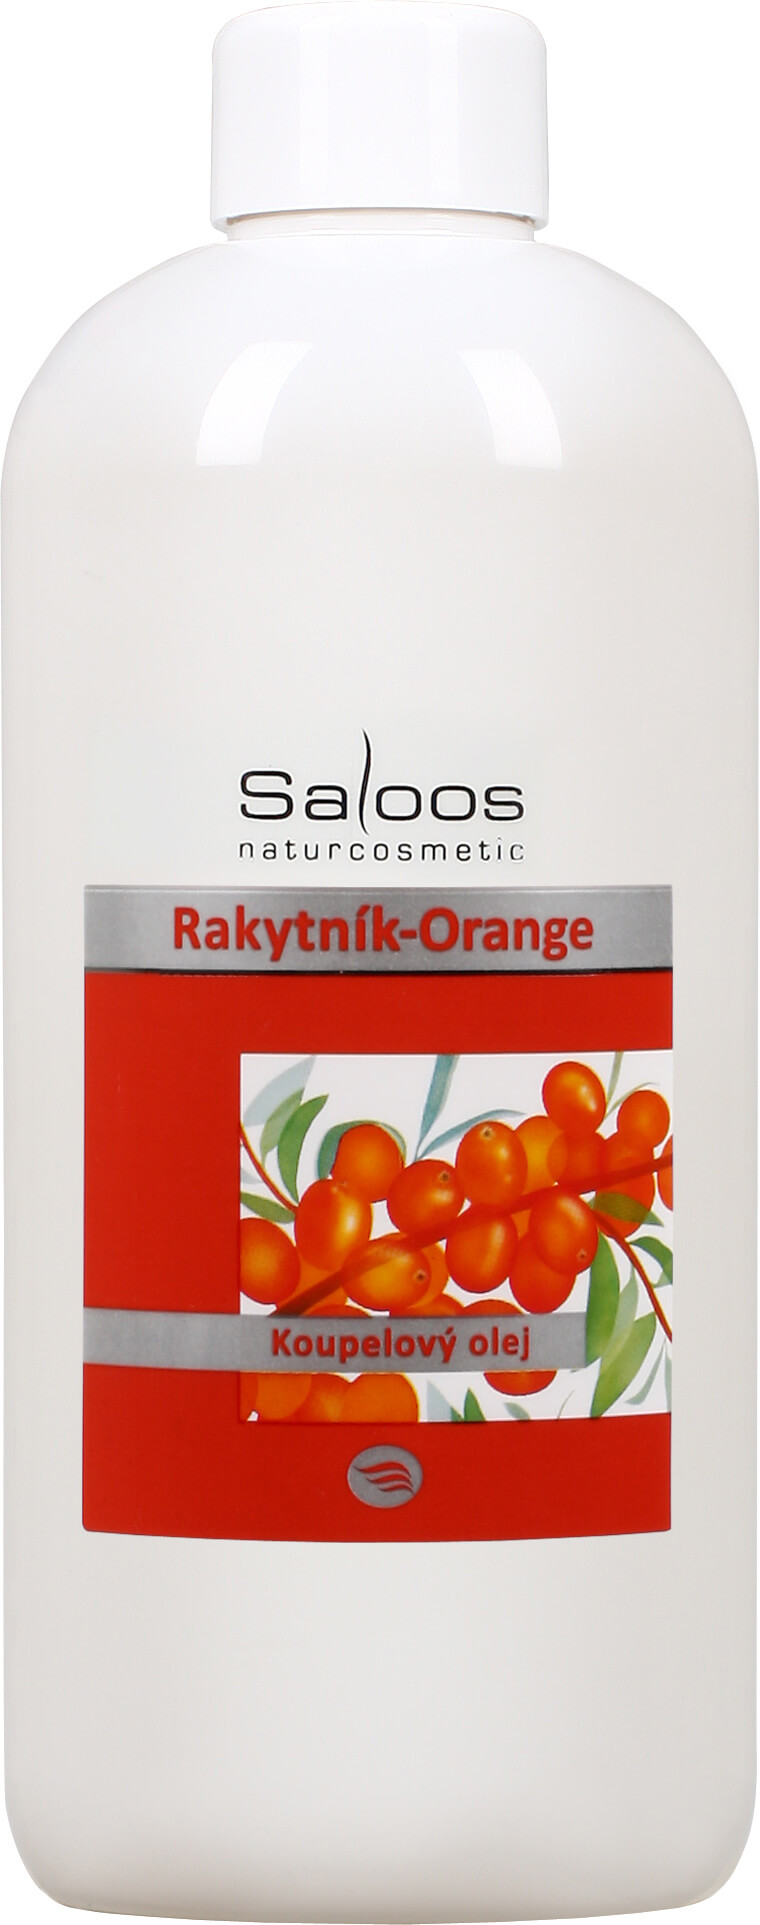 Zobrazit detail výrobku Saloos Koupelový olej - Rakytník-Orange 500 ml + 2 měsíce na vrácení zboží